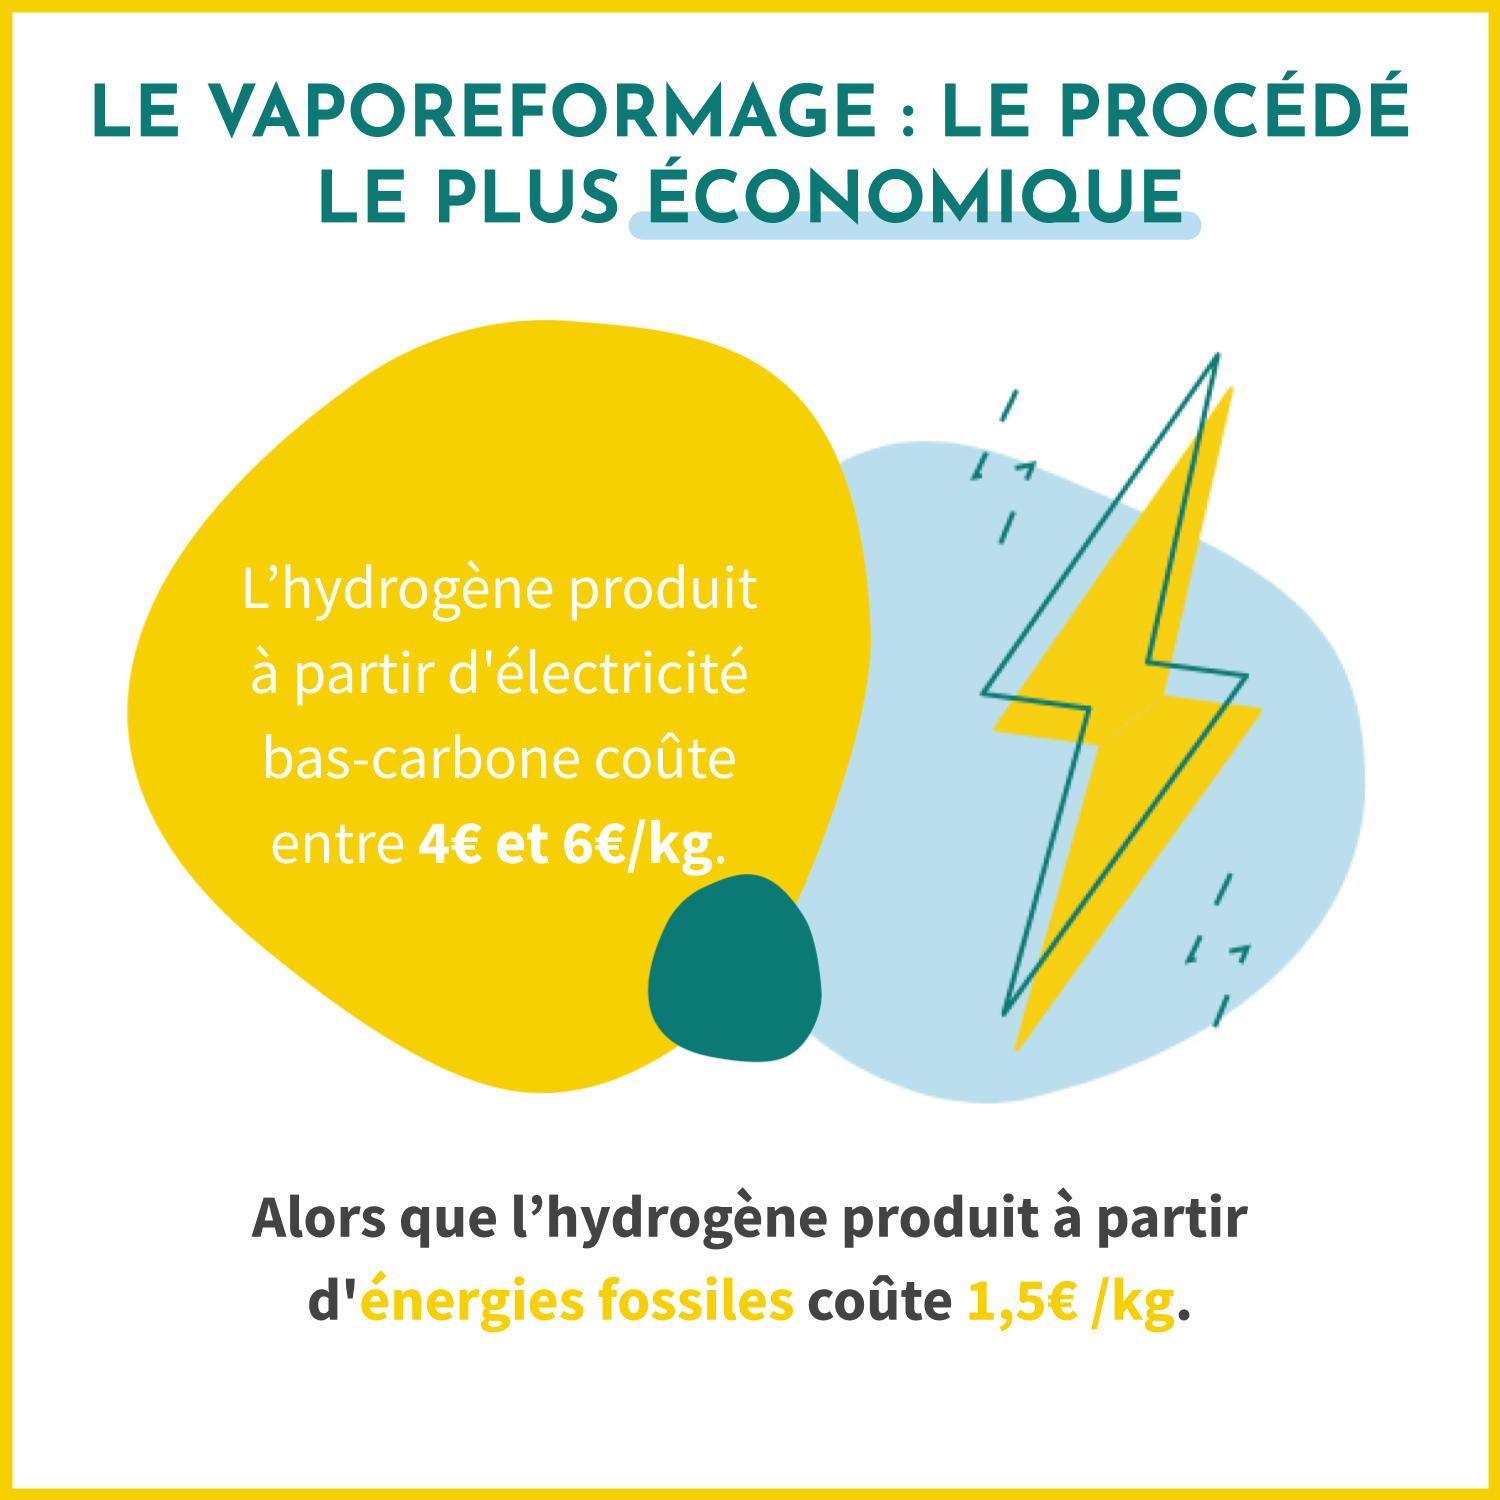 Le vaporeformage est le procédé le plus économique pour produire de l'hydrogène. Il coûte 1,5€/kg alors que l'hydrogène produit à partir d'électricité bas-carbone coûte entre 4€ et 6€/kg.